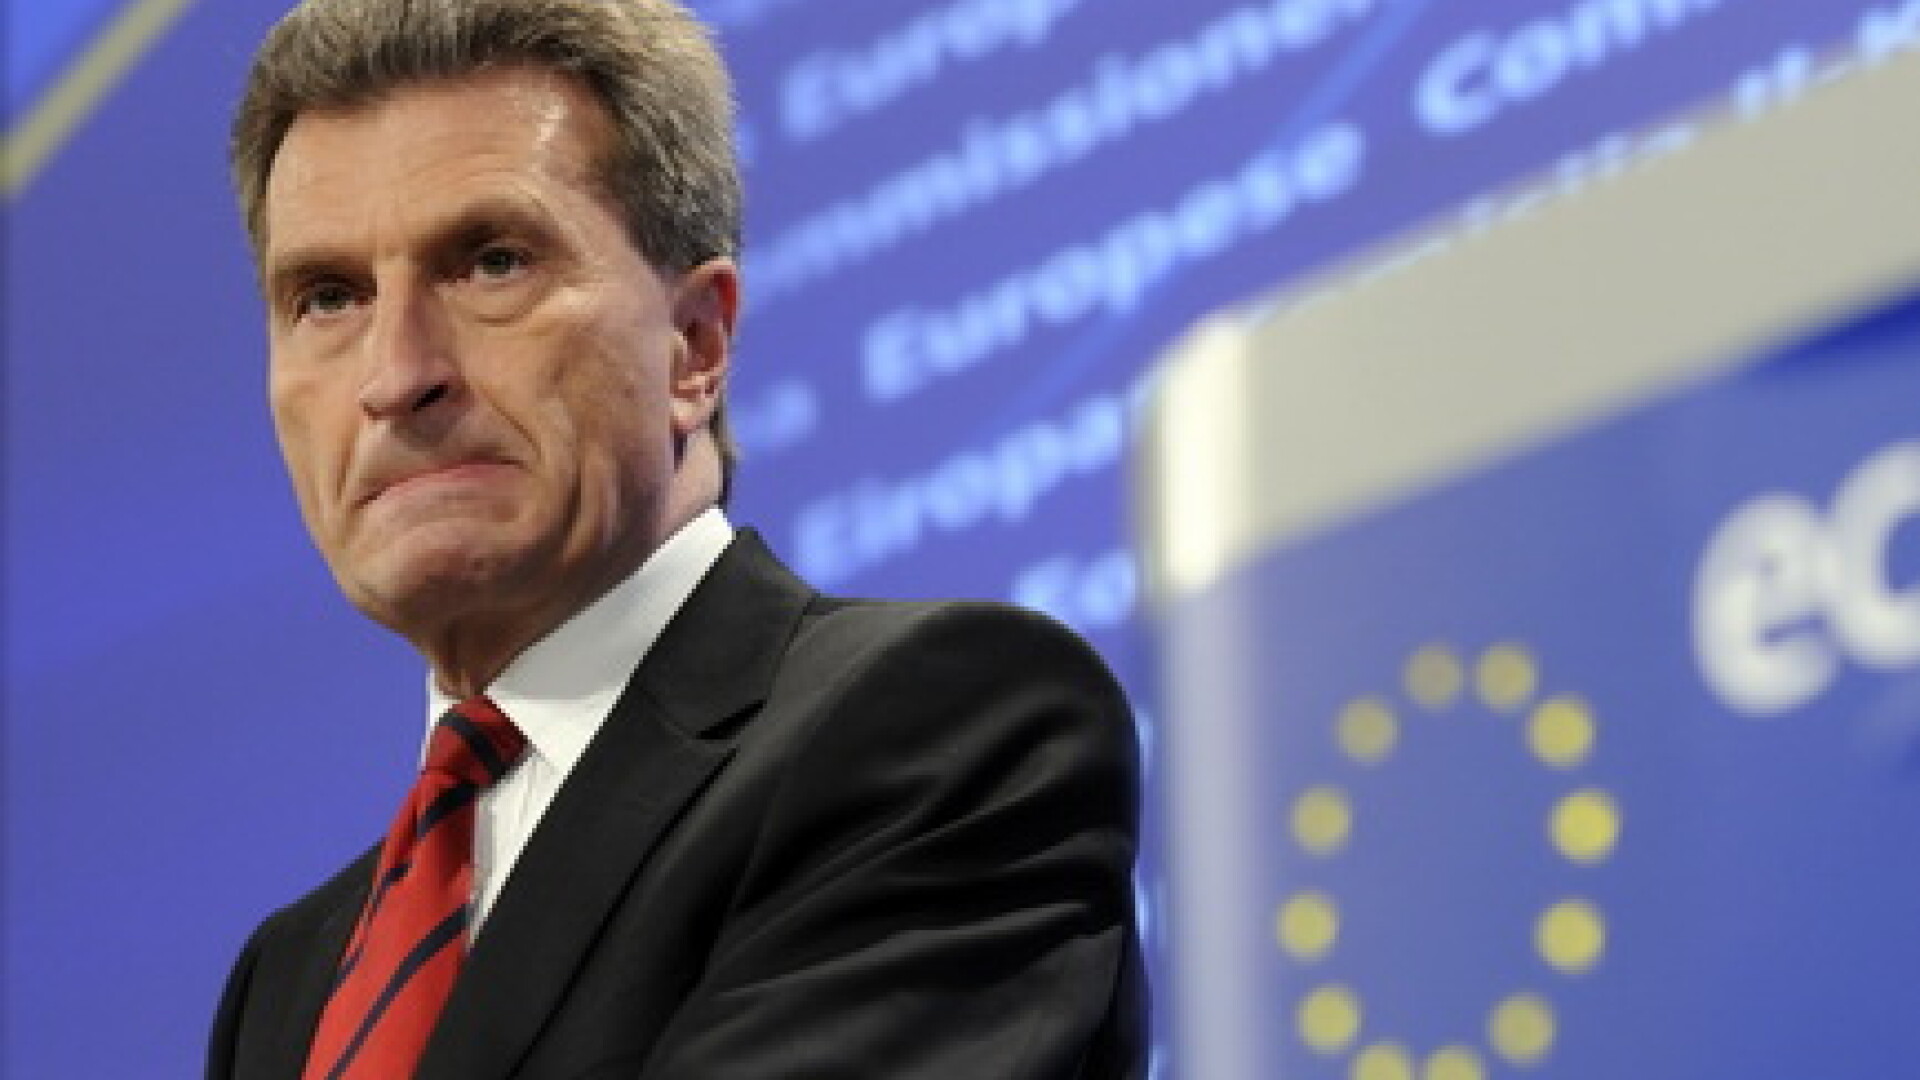 Ghunter Oettinger